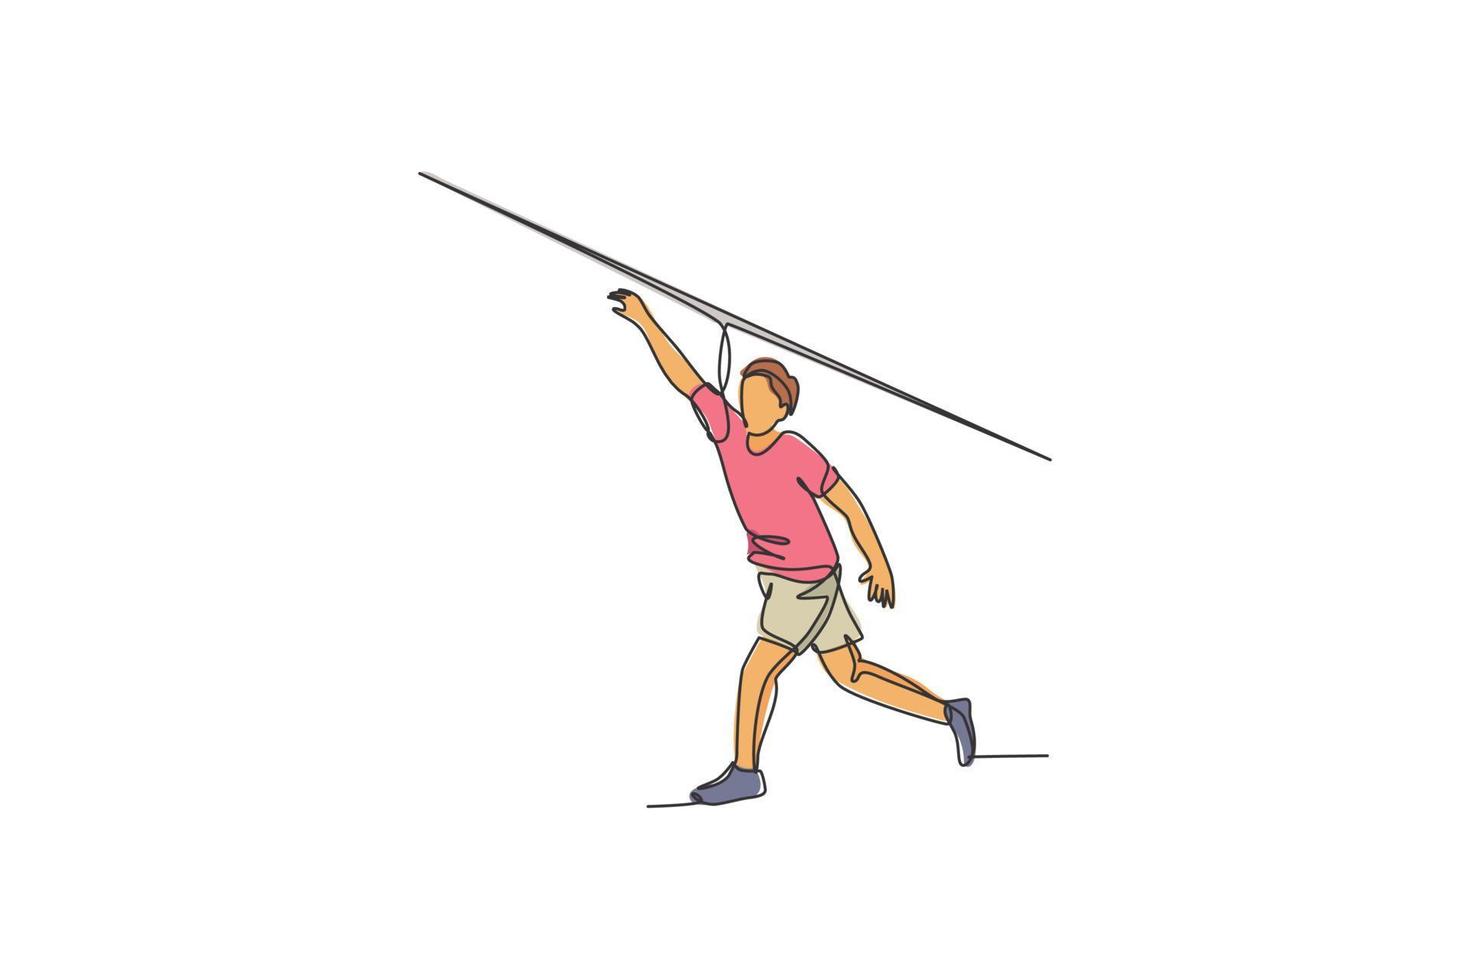 un dibujo de una sola línea de un joven enérgico ejerciendo jabalina de lanzamiento largo con ilustración gráfica de vector de potencia. concepto de deporte atlético de estilo de vida saludable. diseño moderno de dibujo de línea continua